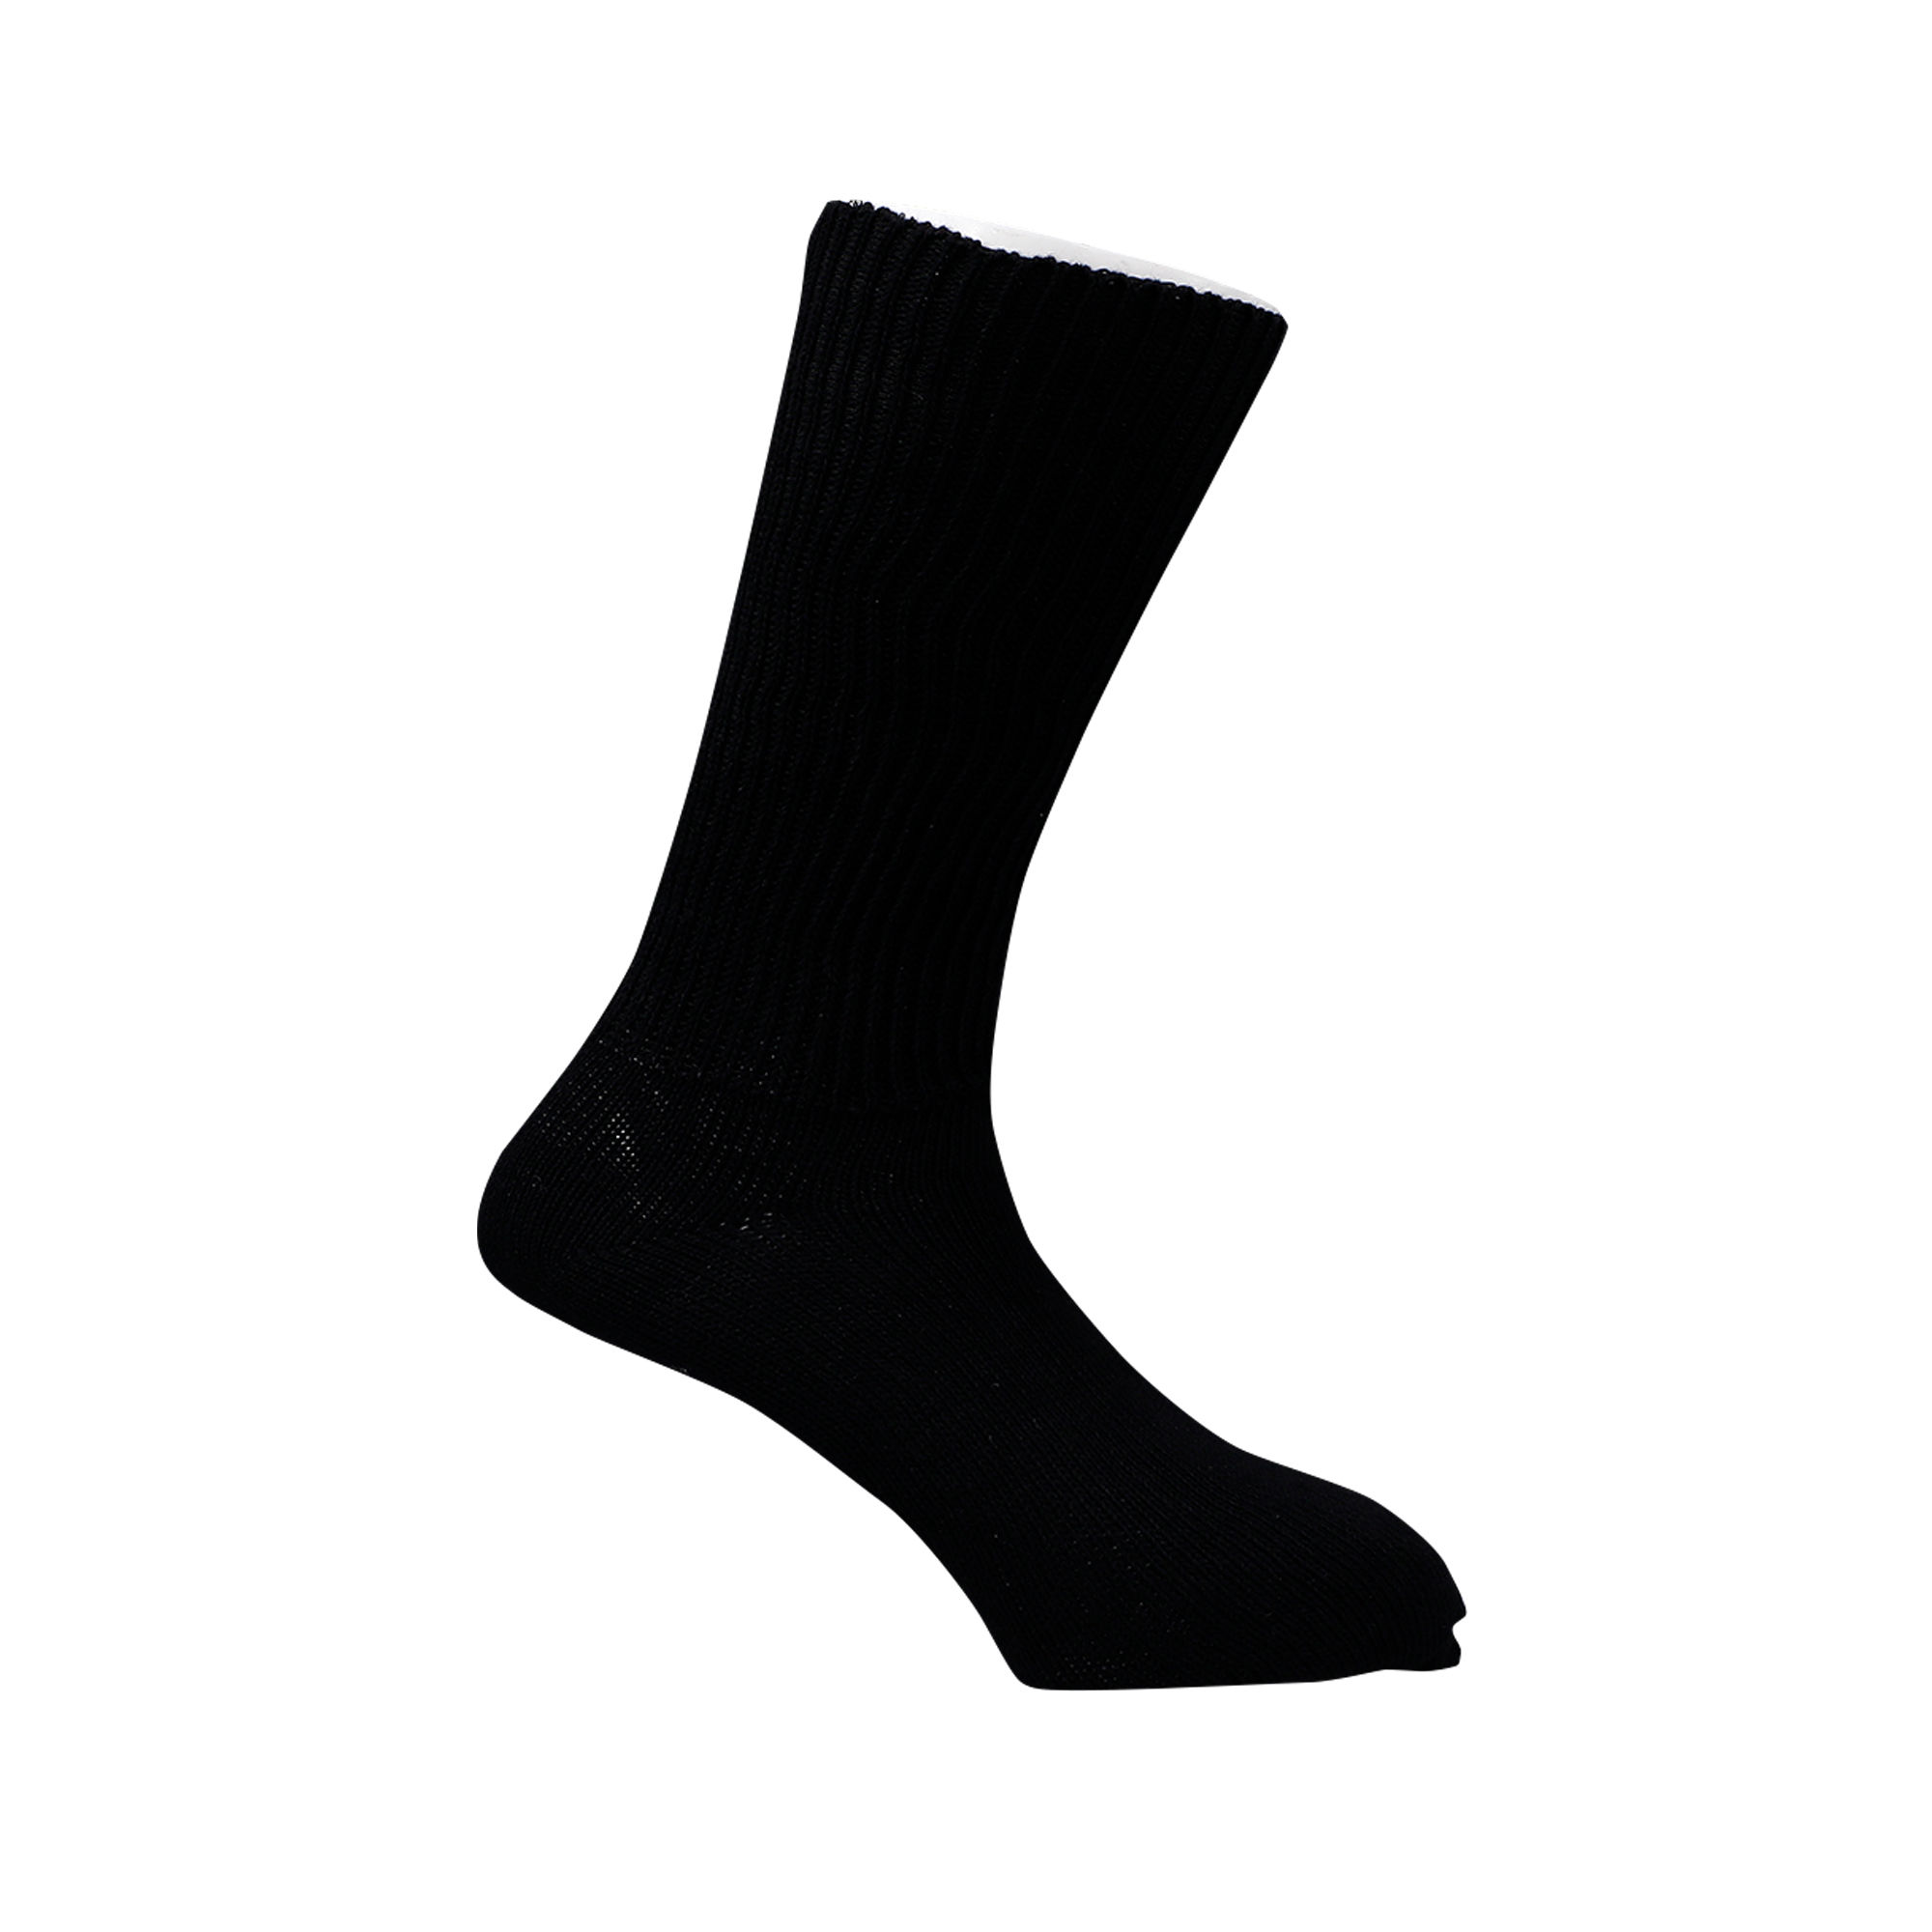 Renewa Simcan Comfort Sock Large Dr.Sayanis , Pack of 1 